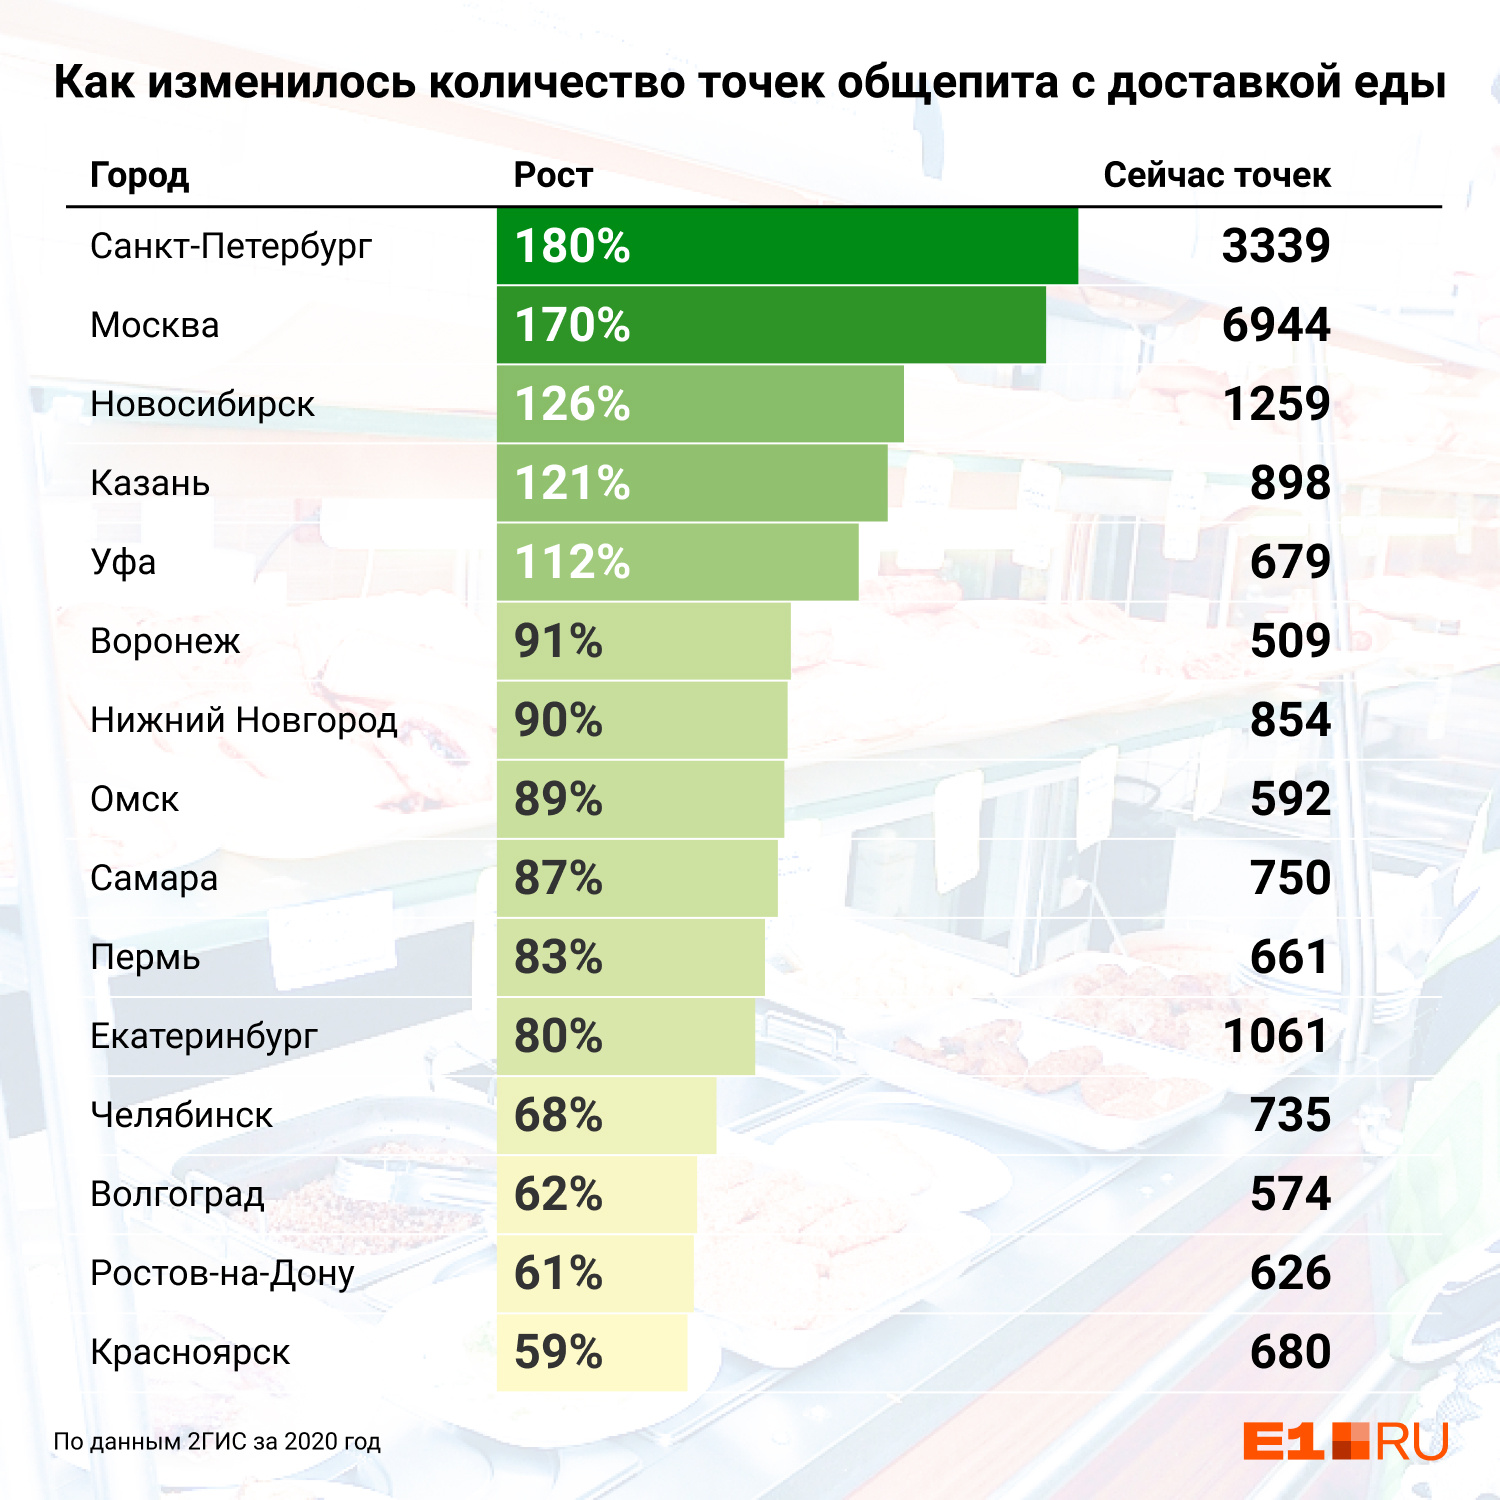 Екатеринбург оказался на одиннадцатом месте в стране по числу новых ресторанов с доставкой